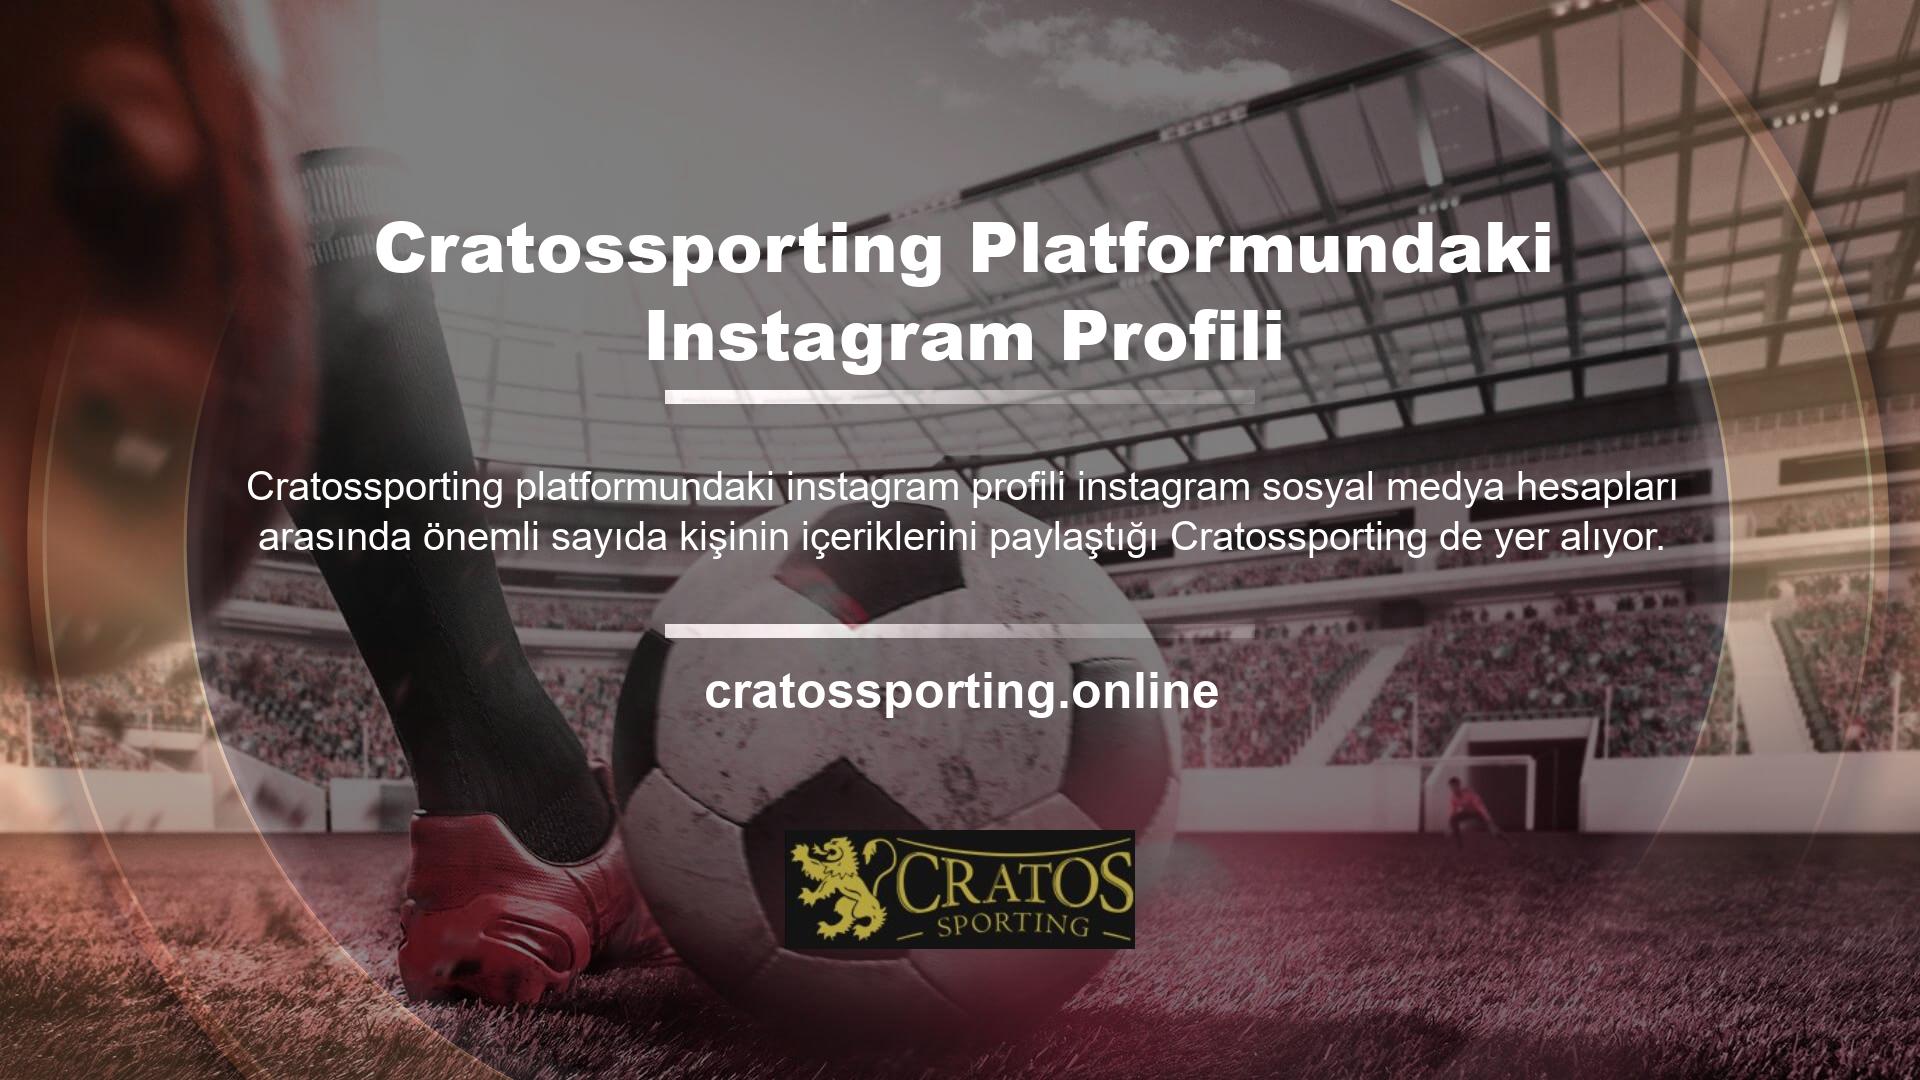 Instagram çünkü Cratossporting bahis sitesi kullanıcılar için en iyi hesapları oluşturur